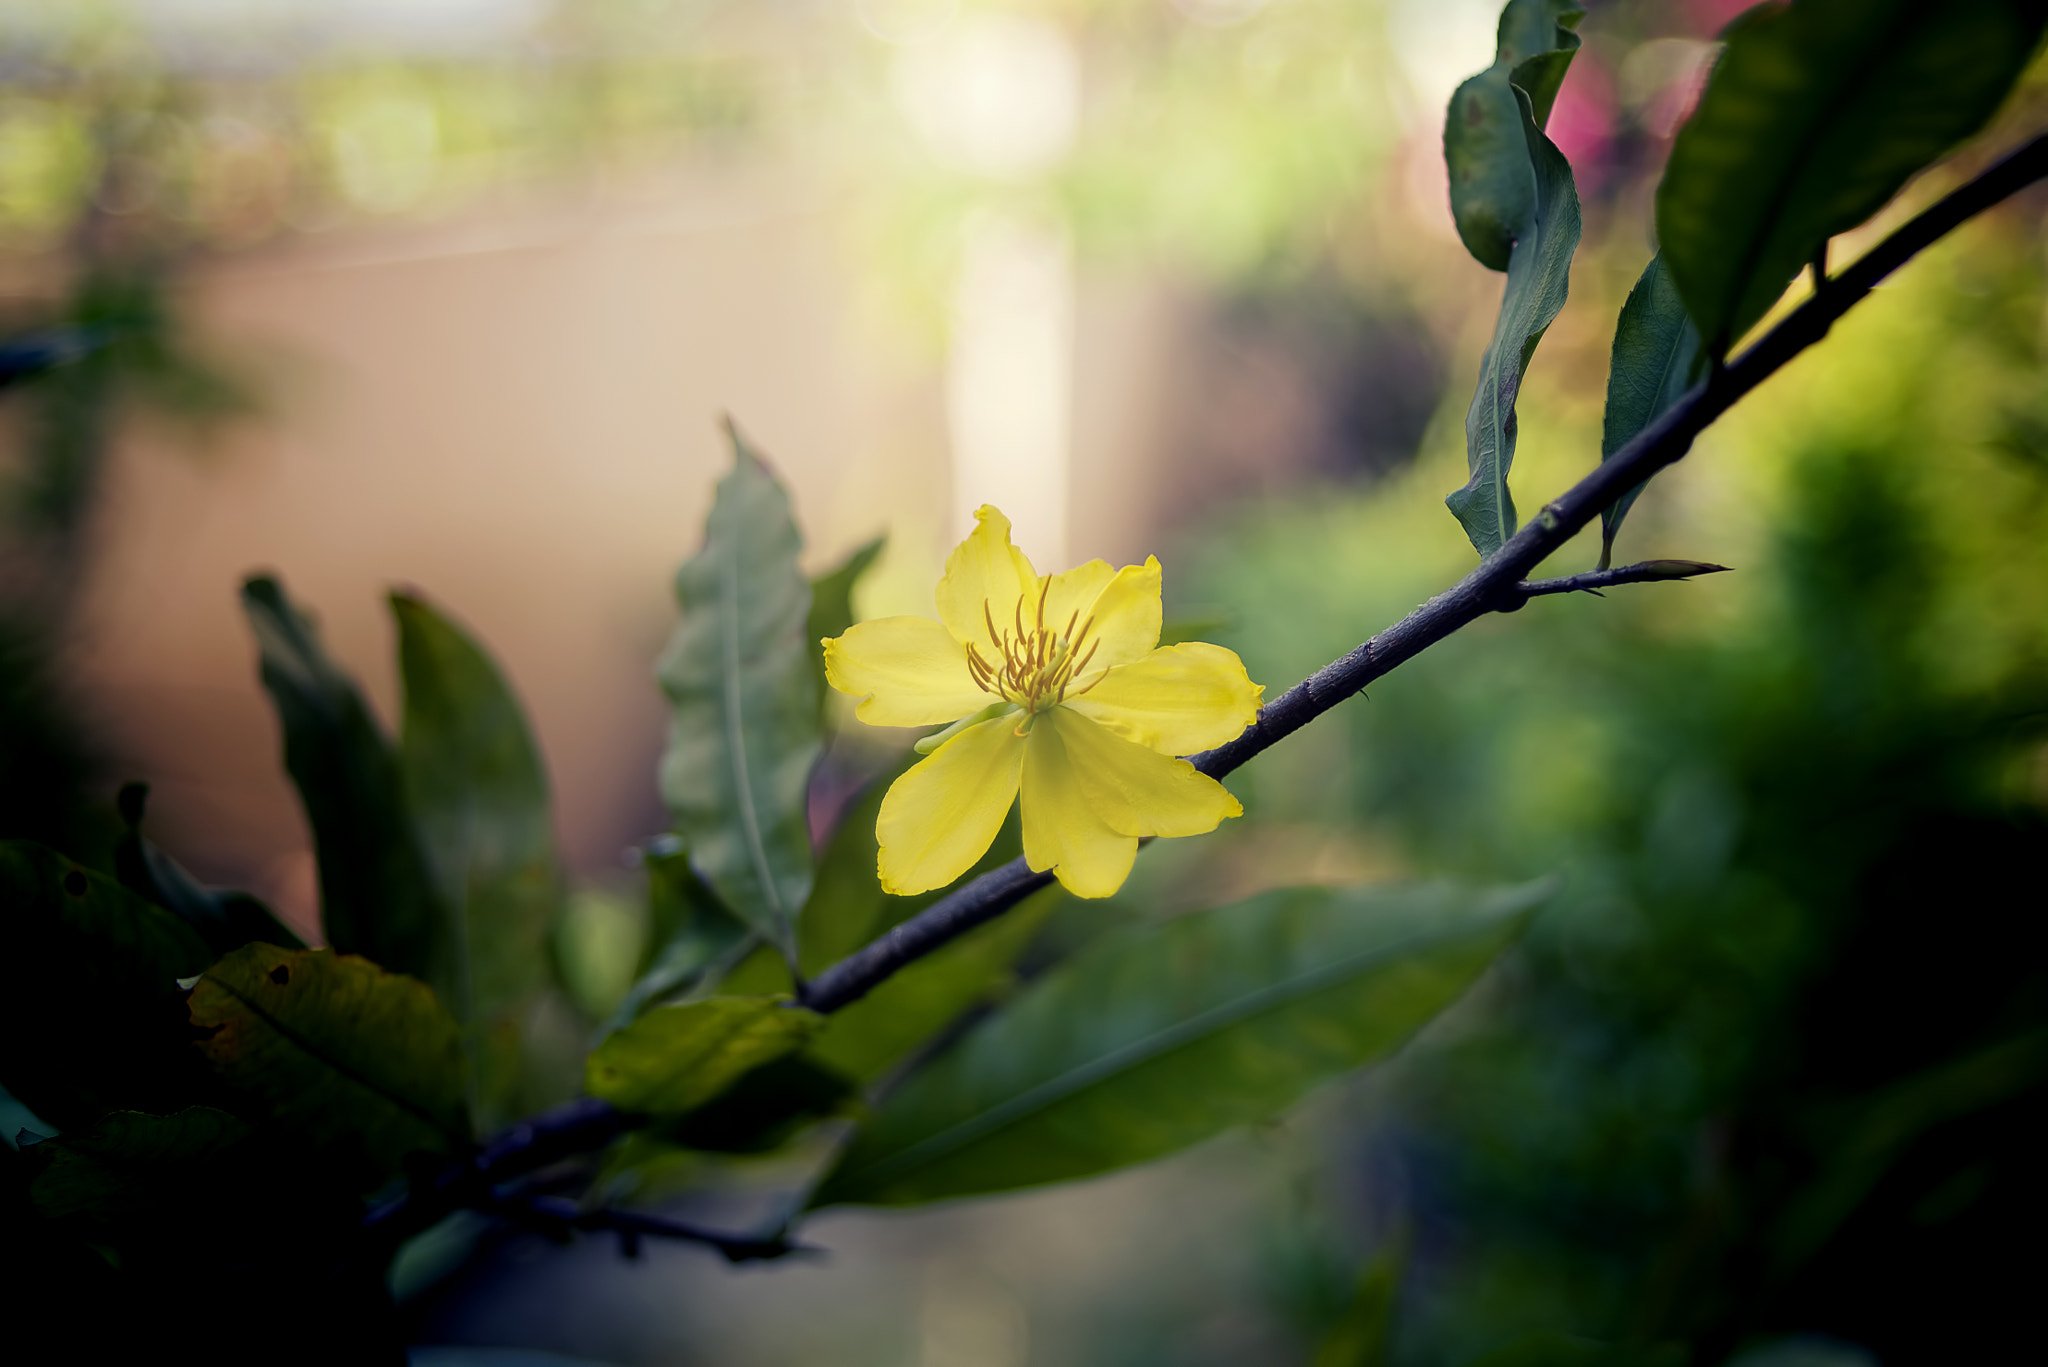 Nikon D610 + AF Zoom-Nikkor 28-70mm f/3.5-4.5D sample photo. Apricot blossom photography